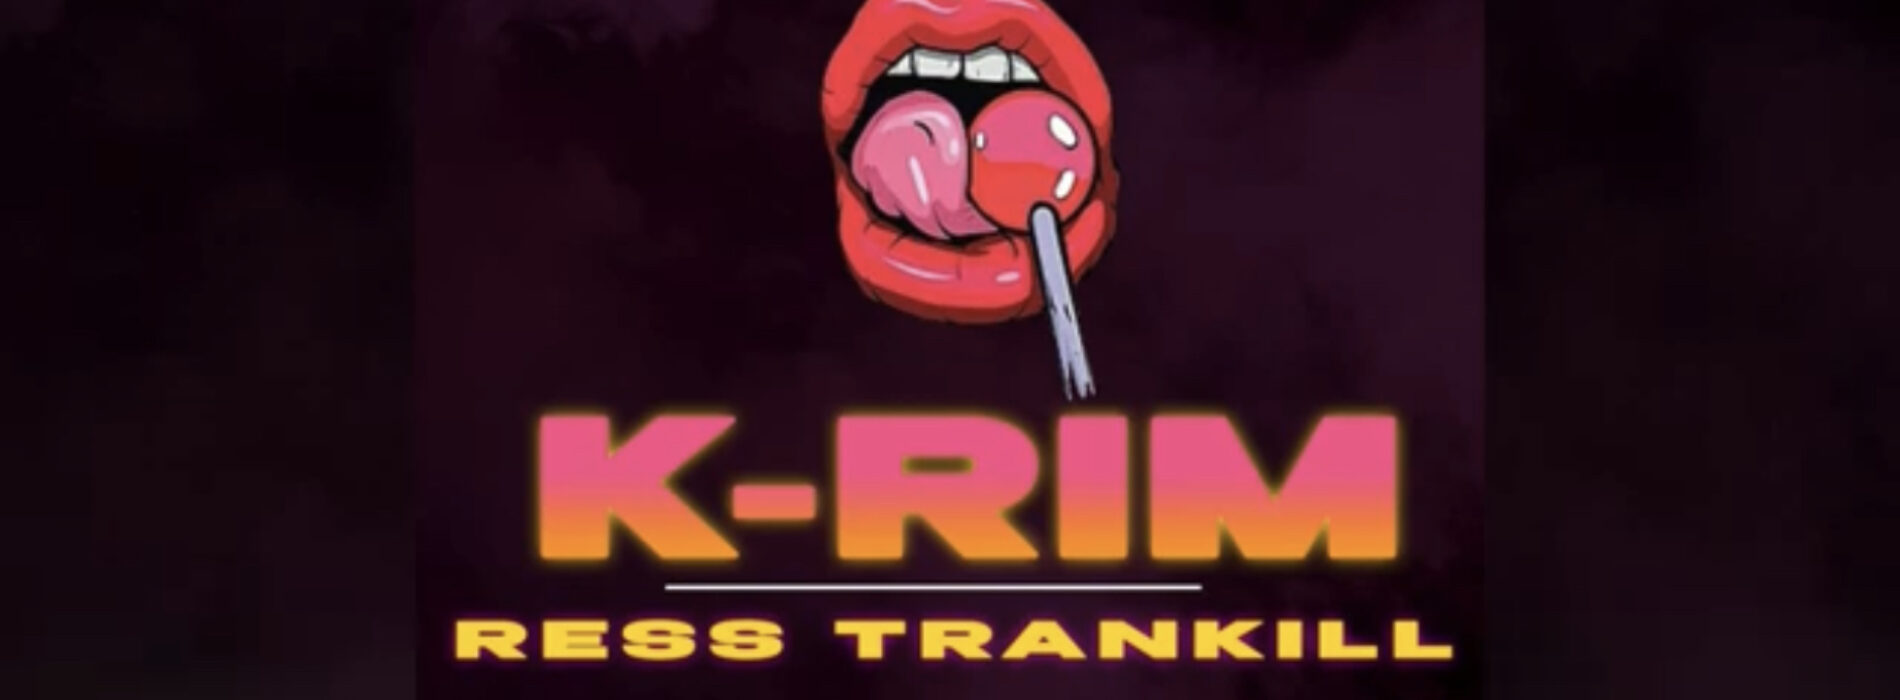 K-RIM – Ress Trankill (audio) feat Dj Tox – Juillet 2022